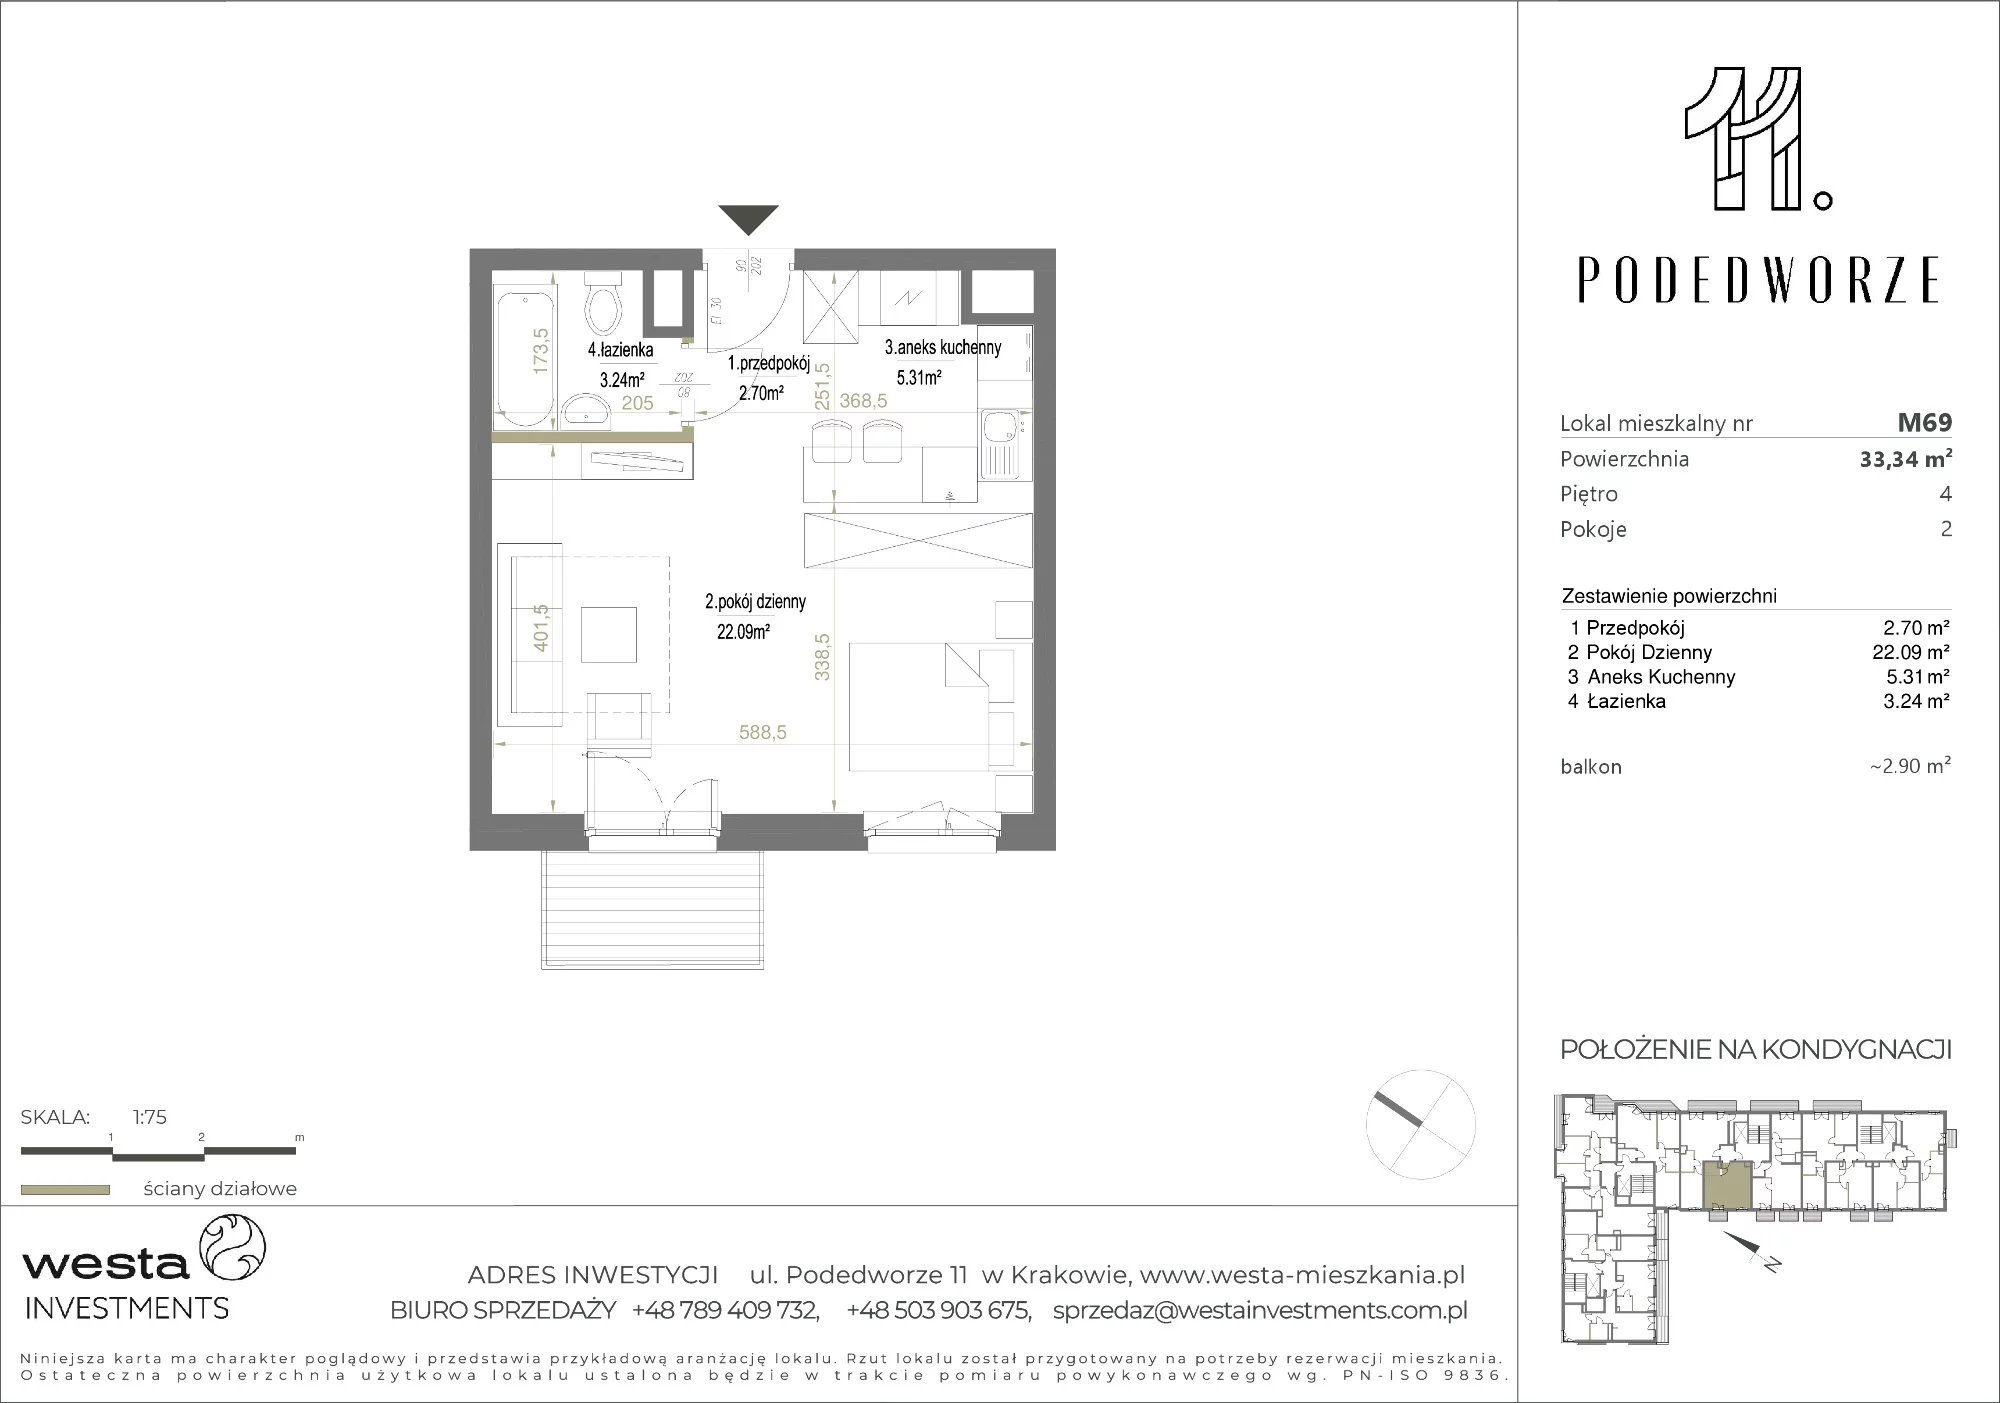 Mieszkanie 33,34 m², piętro 4, oferta nr 69, Podedworze 11, Kraków, Podgórze Duchackie, Piaski Wielkie, ul. Podedworze 11